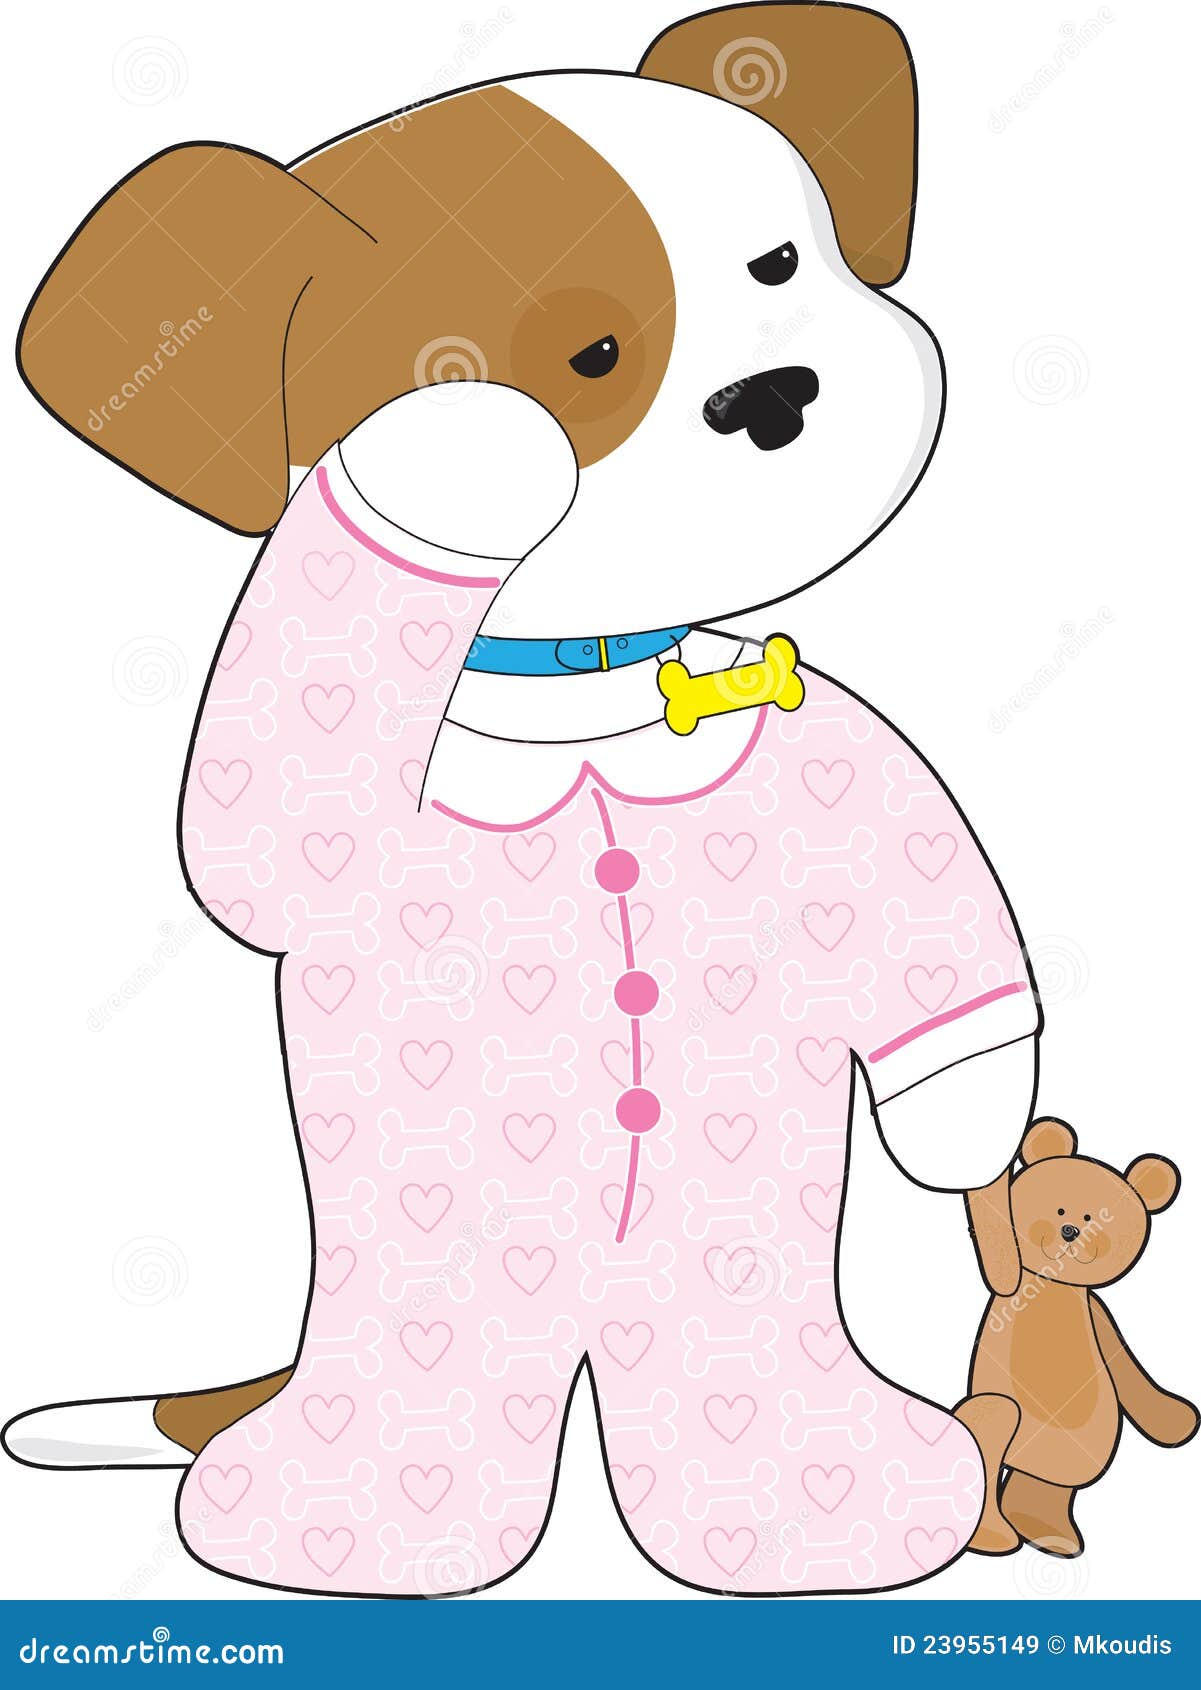 corgi pajamas  Puppies in pajamas, Cute corgi, Cute animals